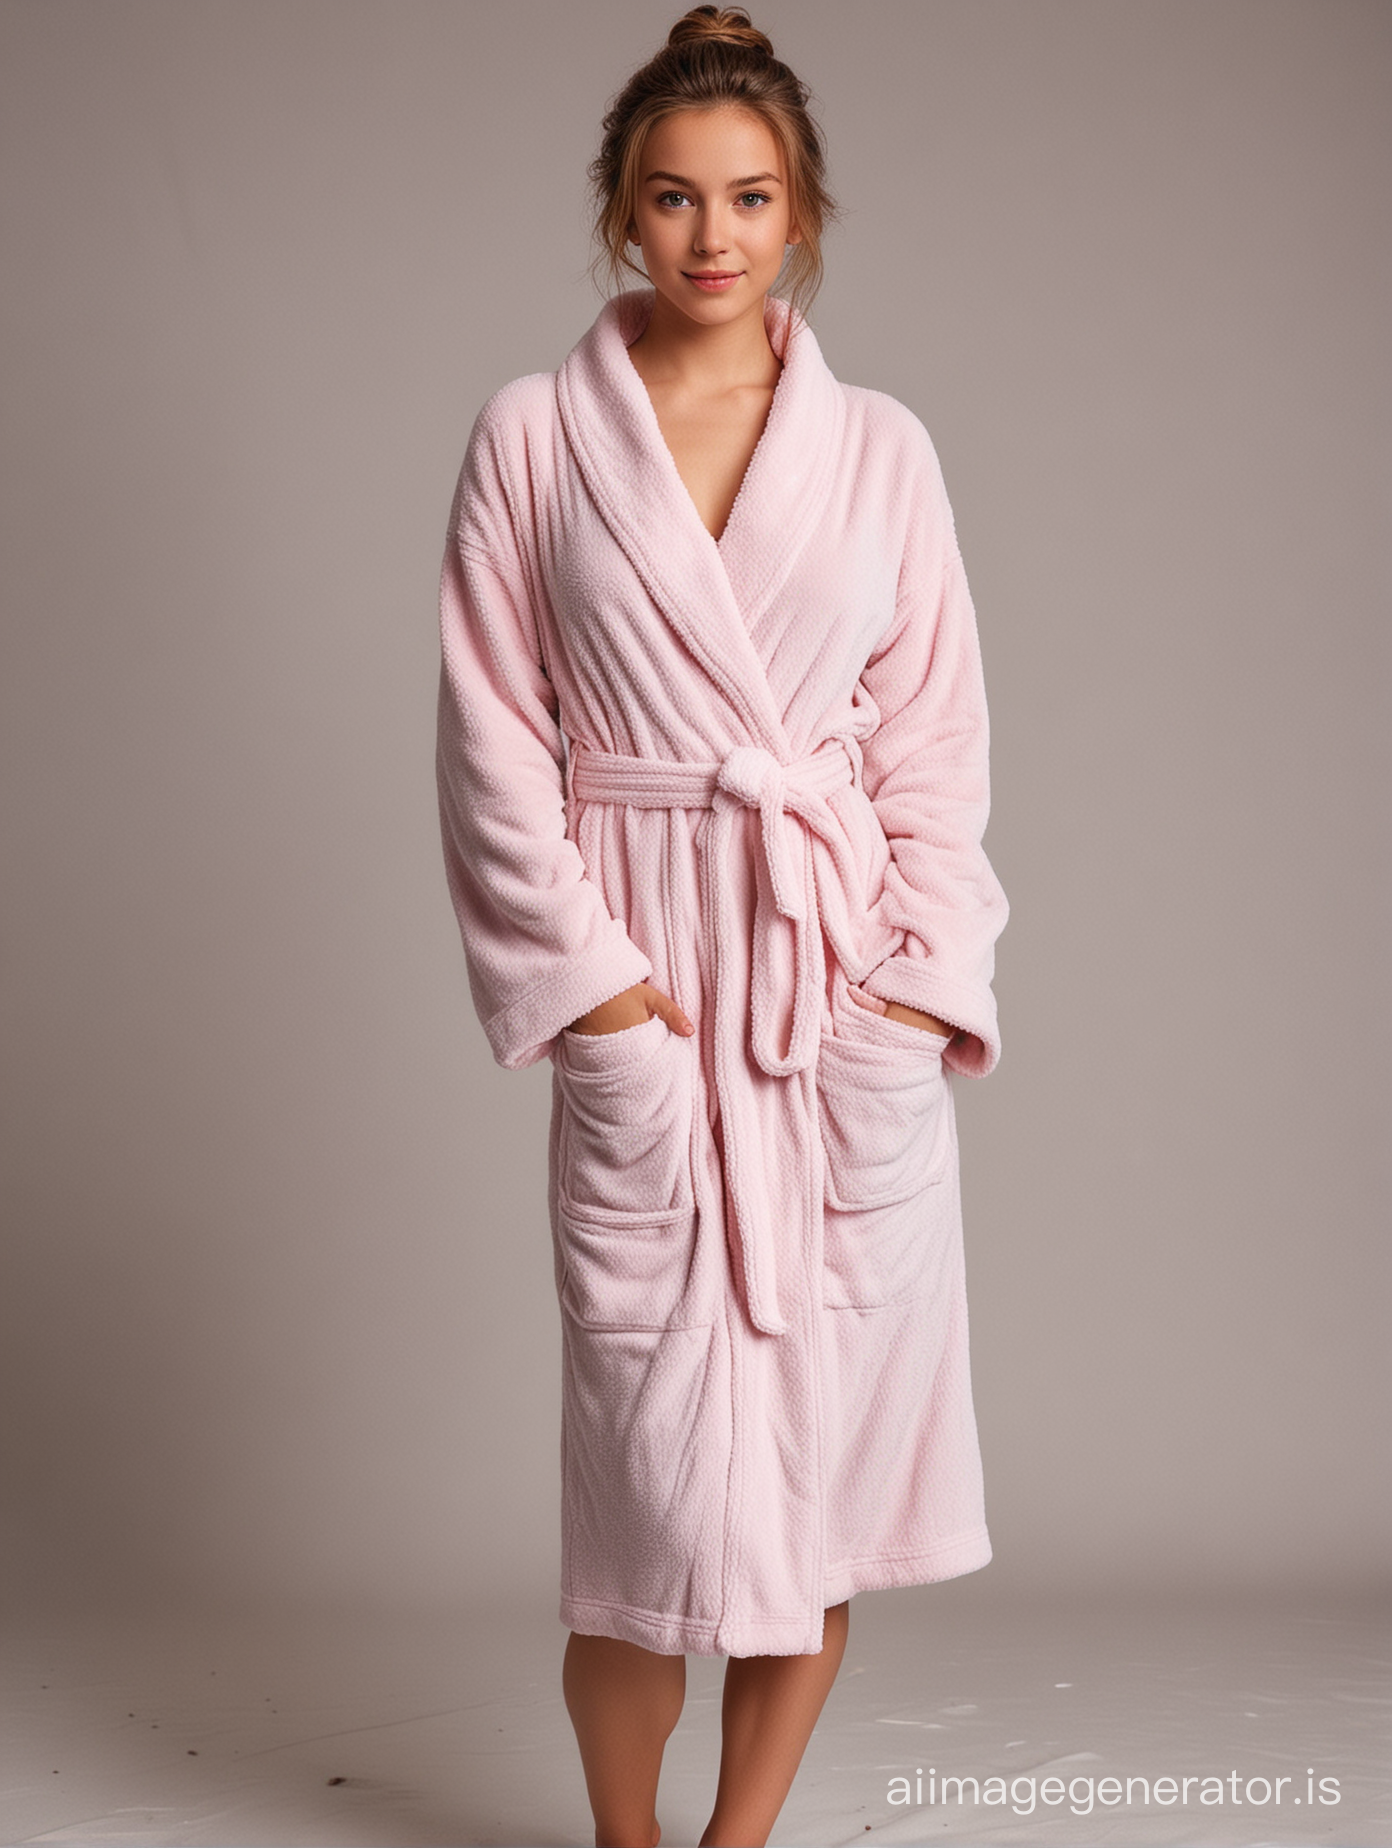 
 girl  full body capture in bathrobe